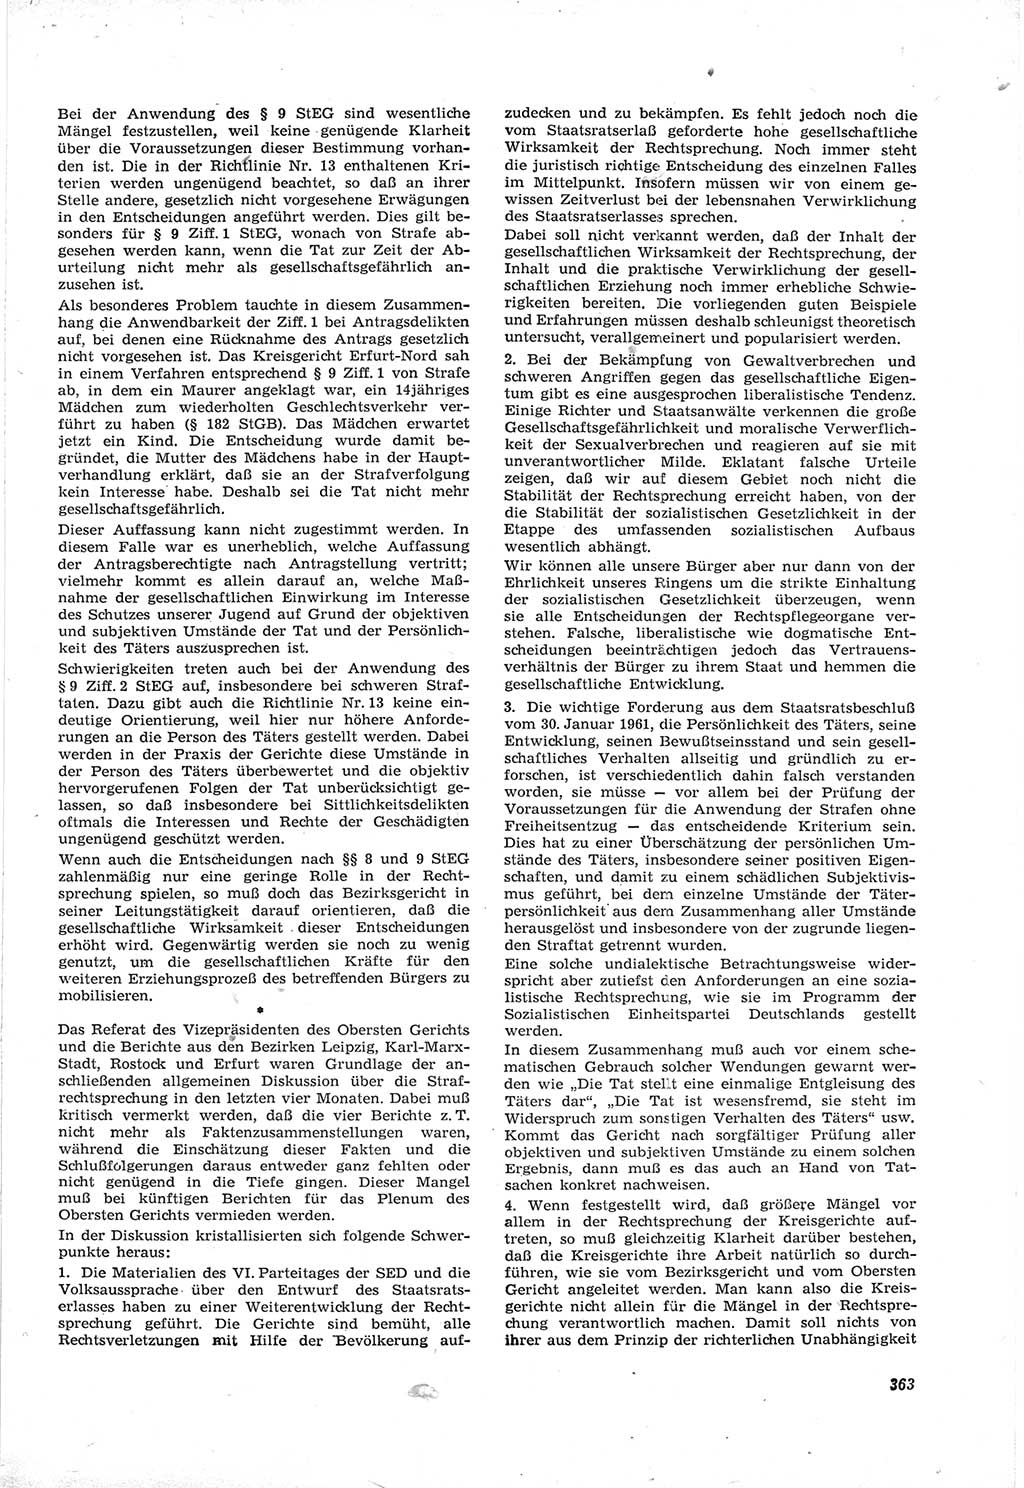 Neue Justiz (NJ), Zeitschrift für Recht und Rechtswissenschaft [Deutsche Demokratische Republik (DDR)], 17. Jahrgang 1963, Seite 363 (NJ DDR 1963, S. 363)